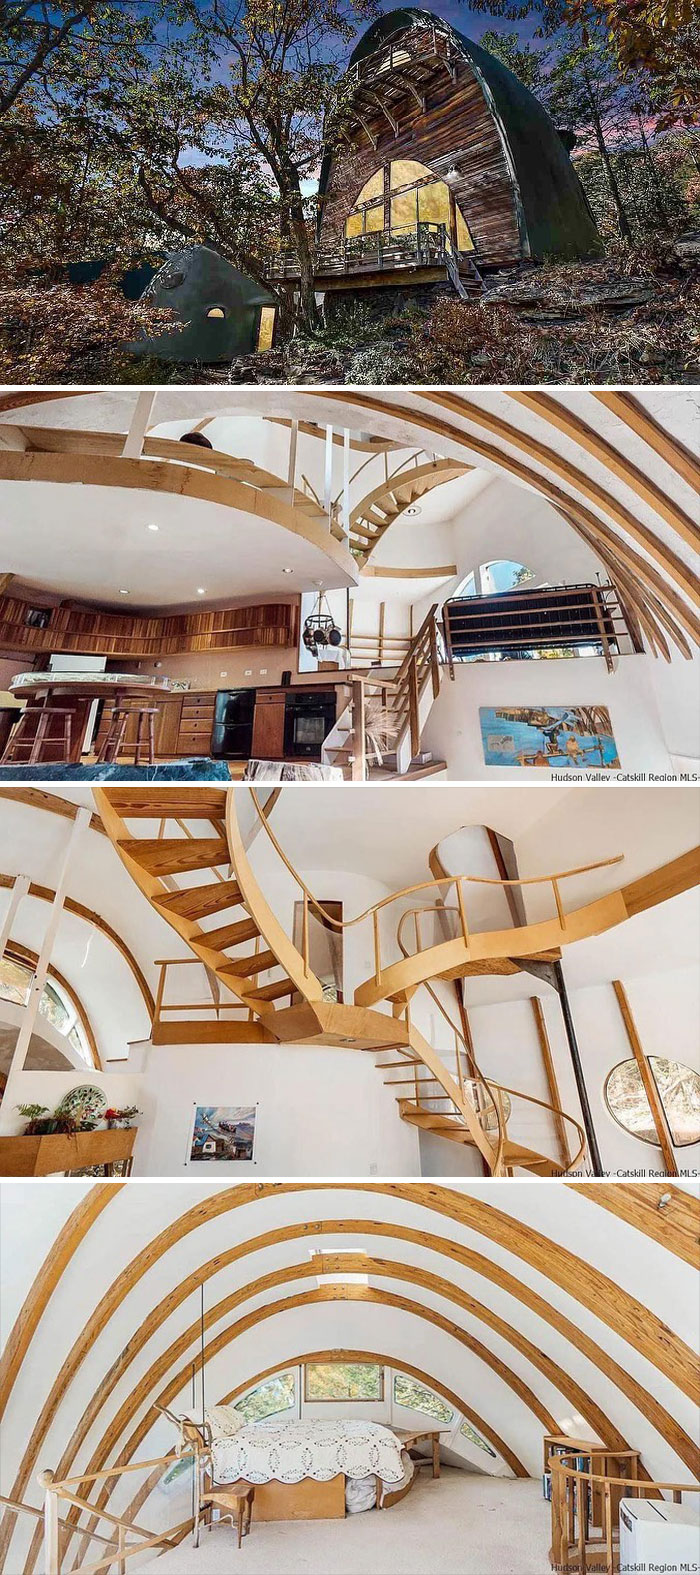 ¡Encontré la casa completa con las extrañas escaleras de Escher! Es bastante real